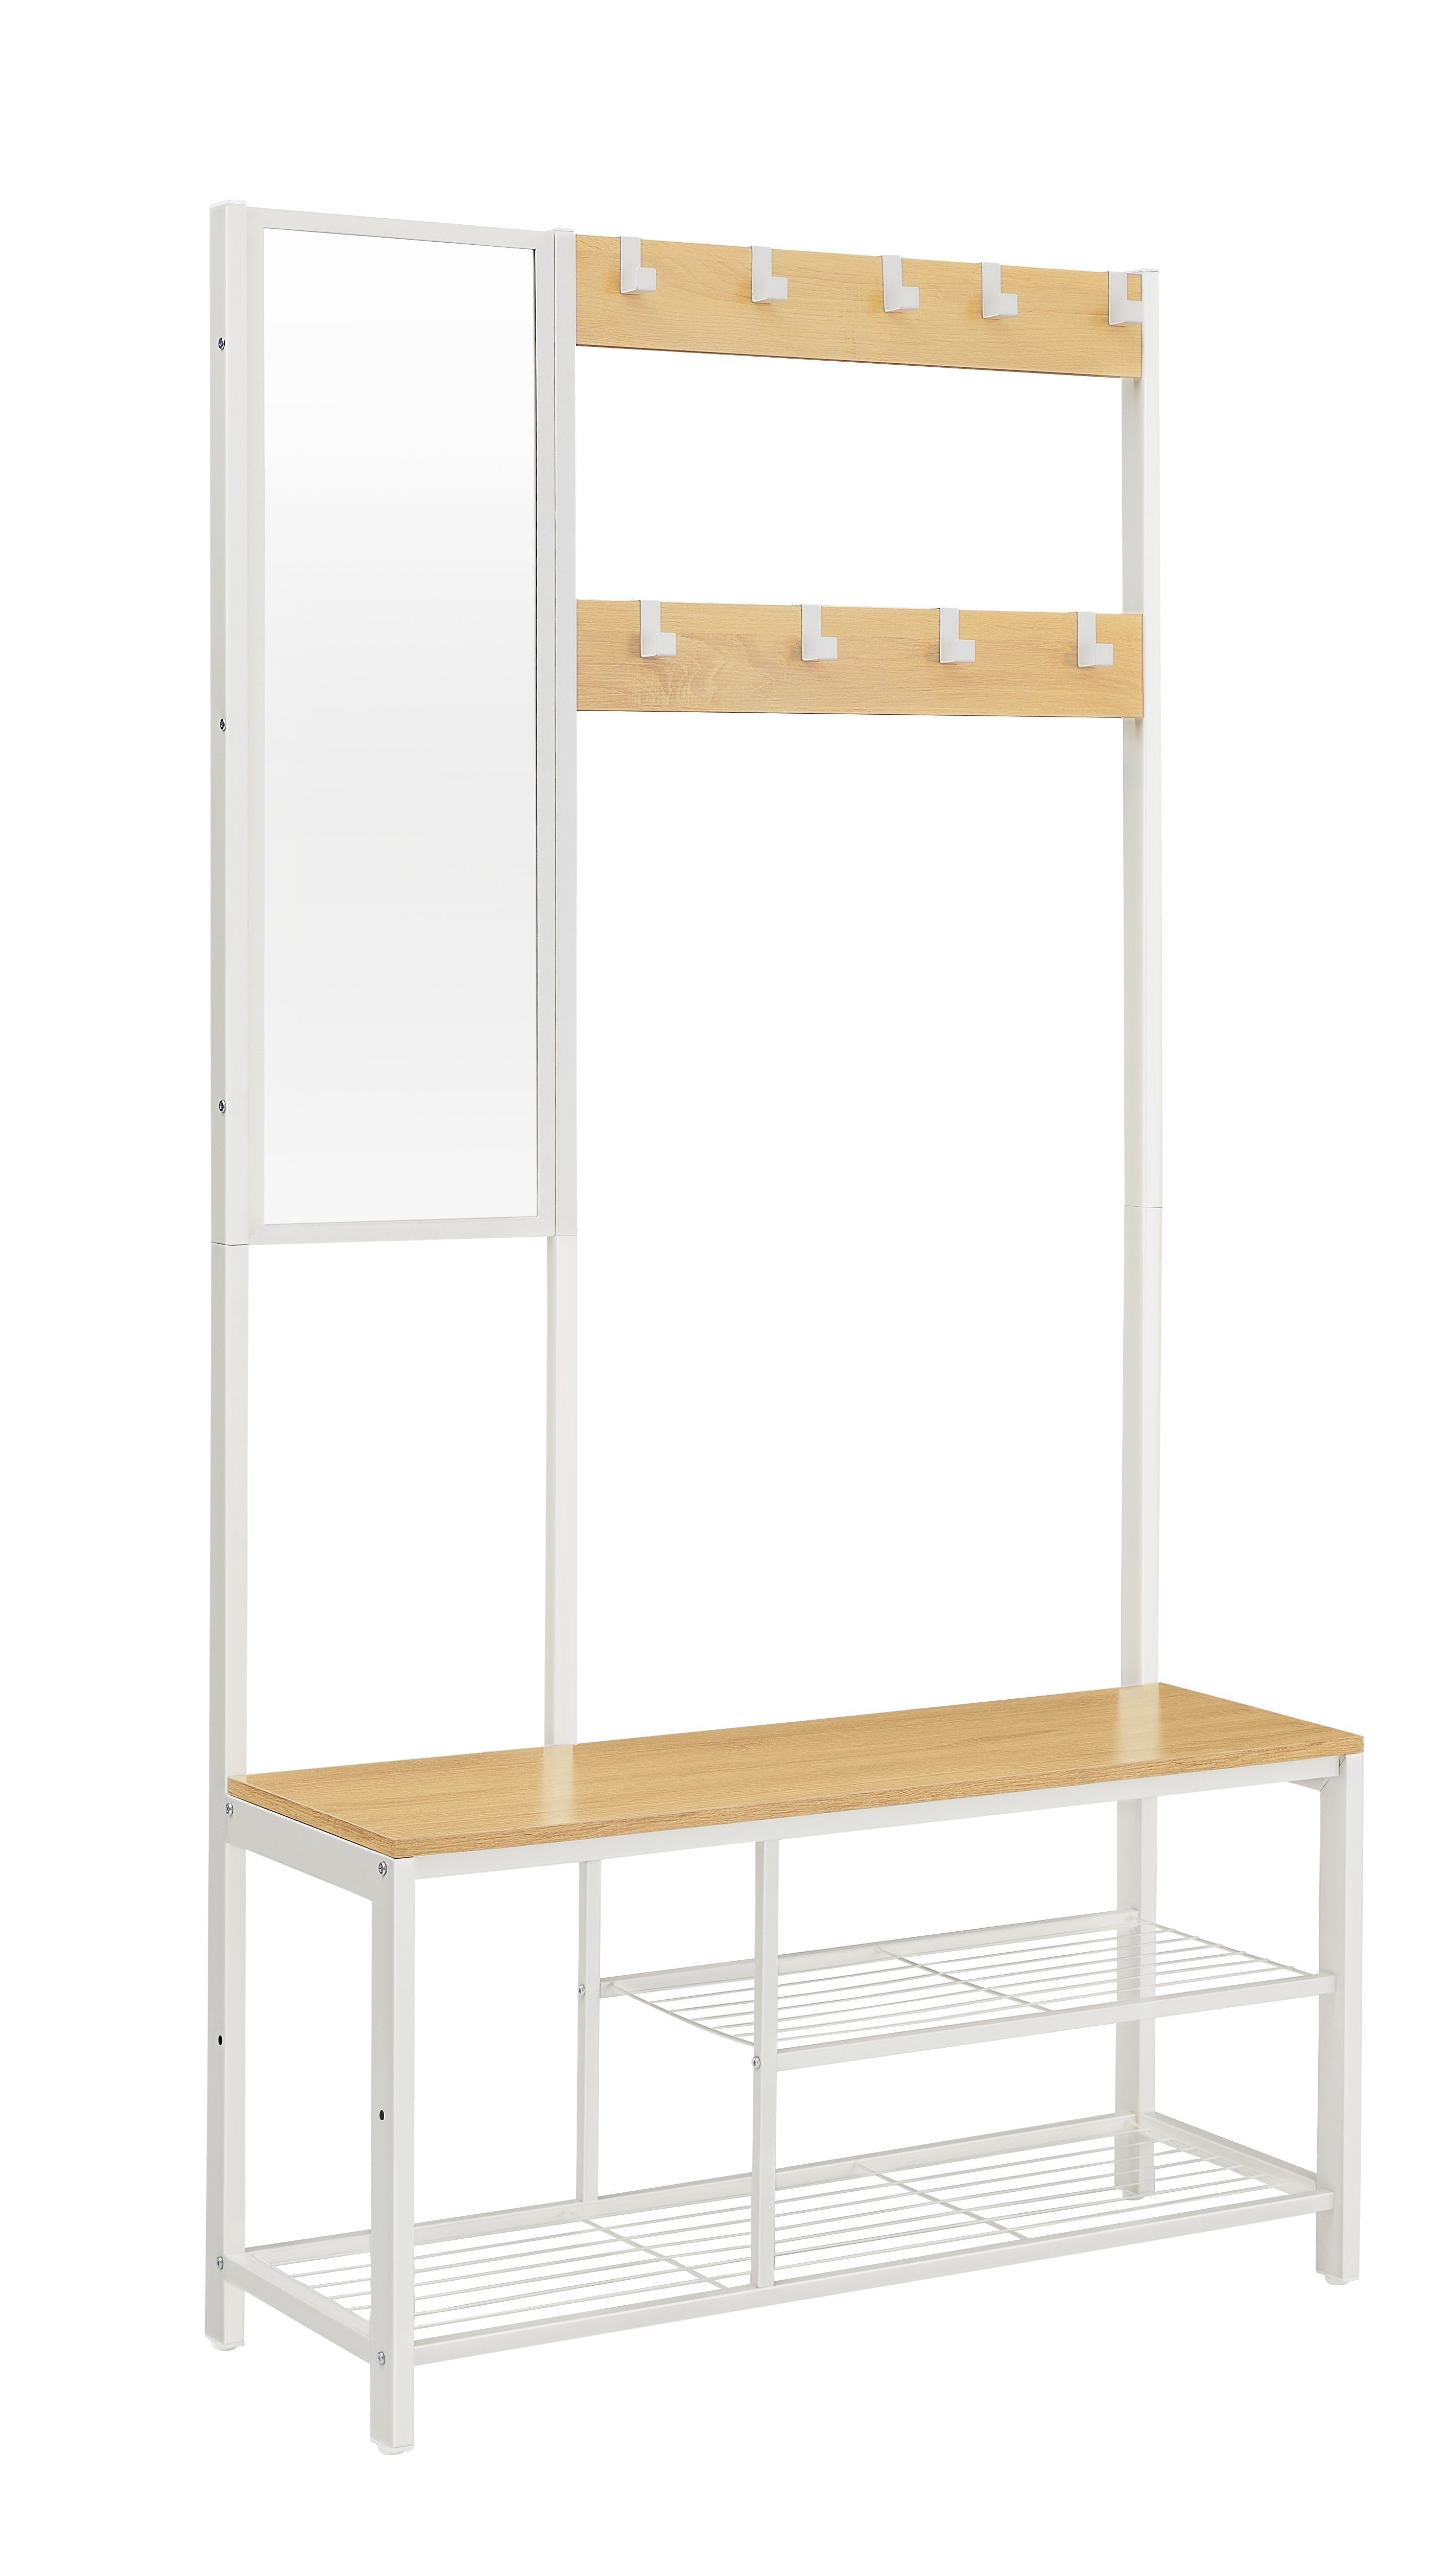 Garderobenständer Eichenfarben-Weiß Spiegel, mit VASAGLE Sitzfläche Garderobe, Schuhregal